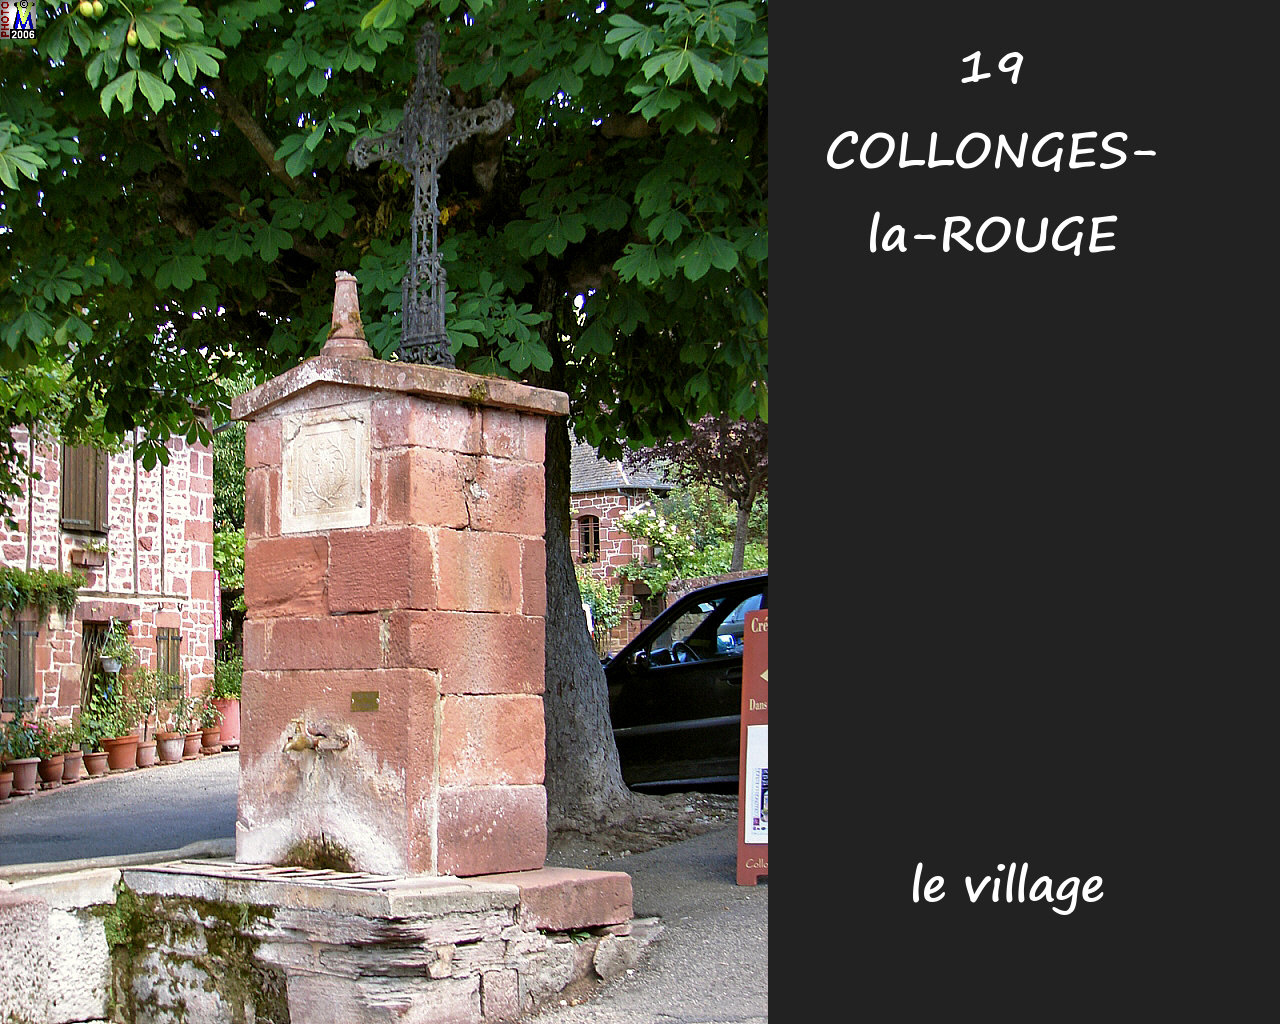 19COLLONGES-ROUGE_village_162.jpg